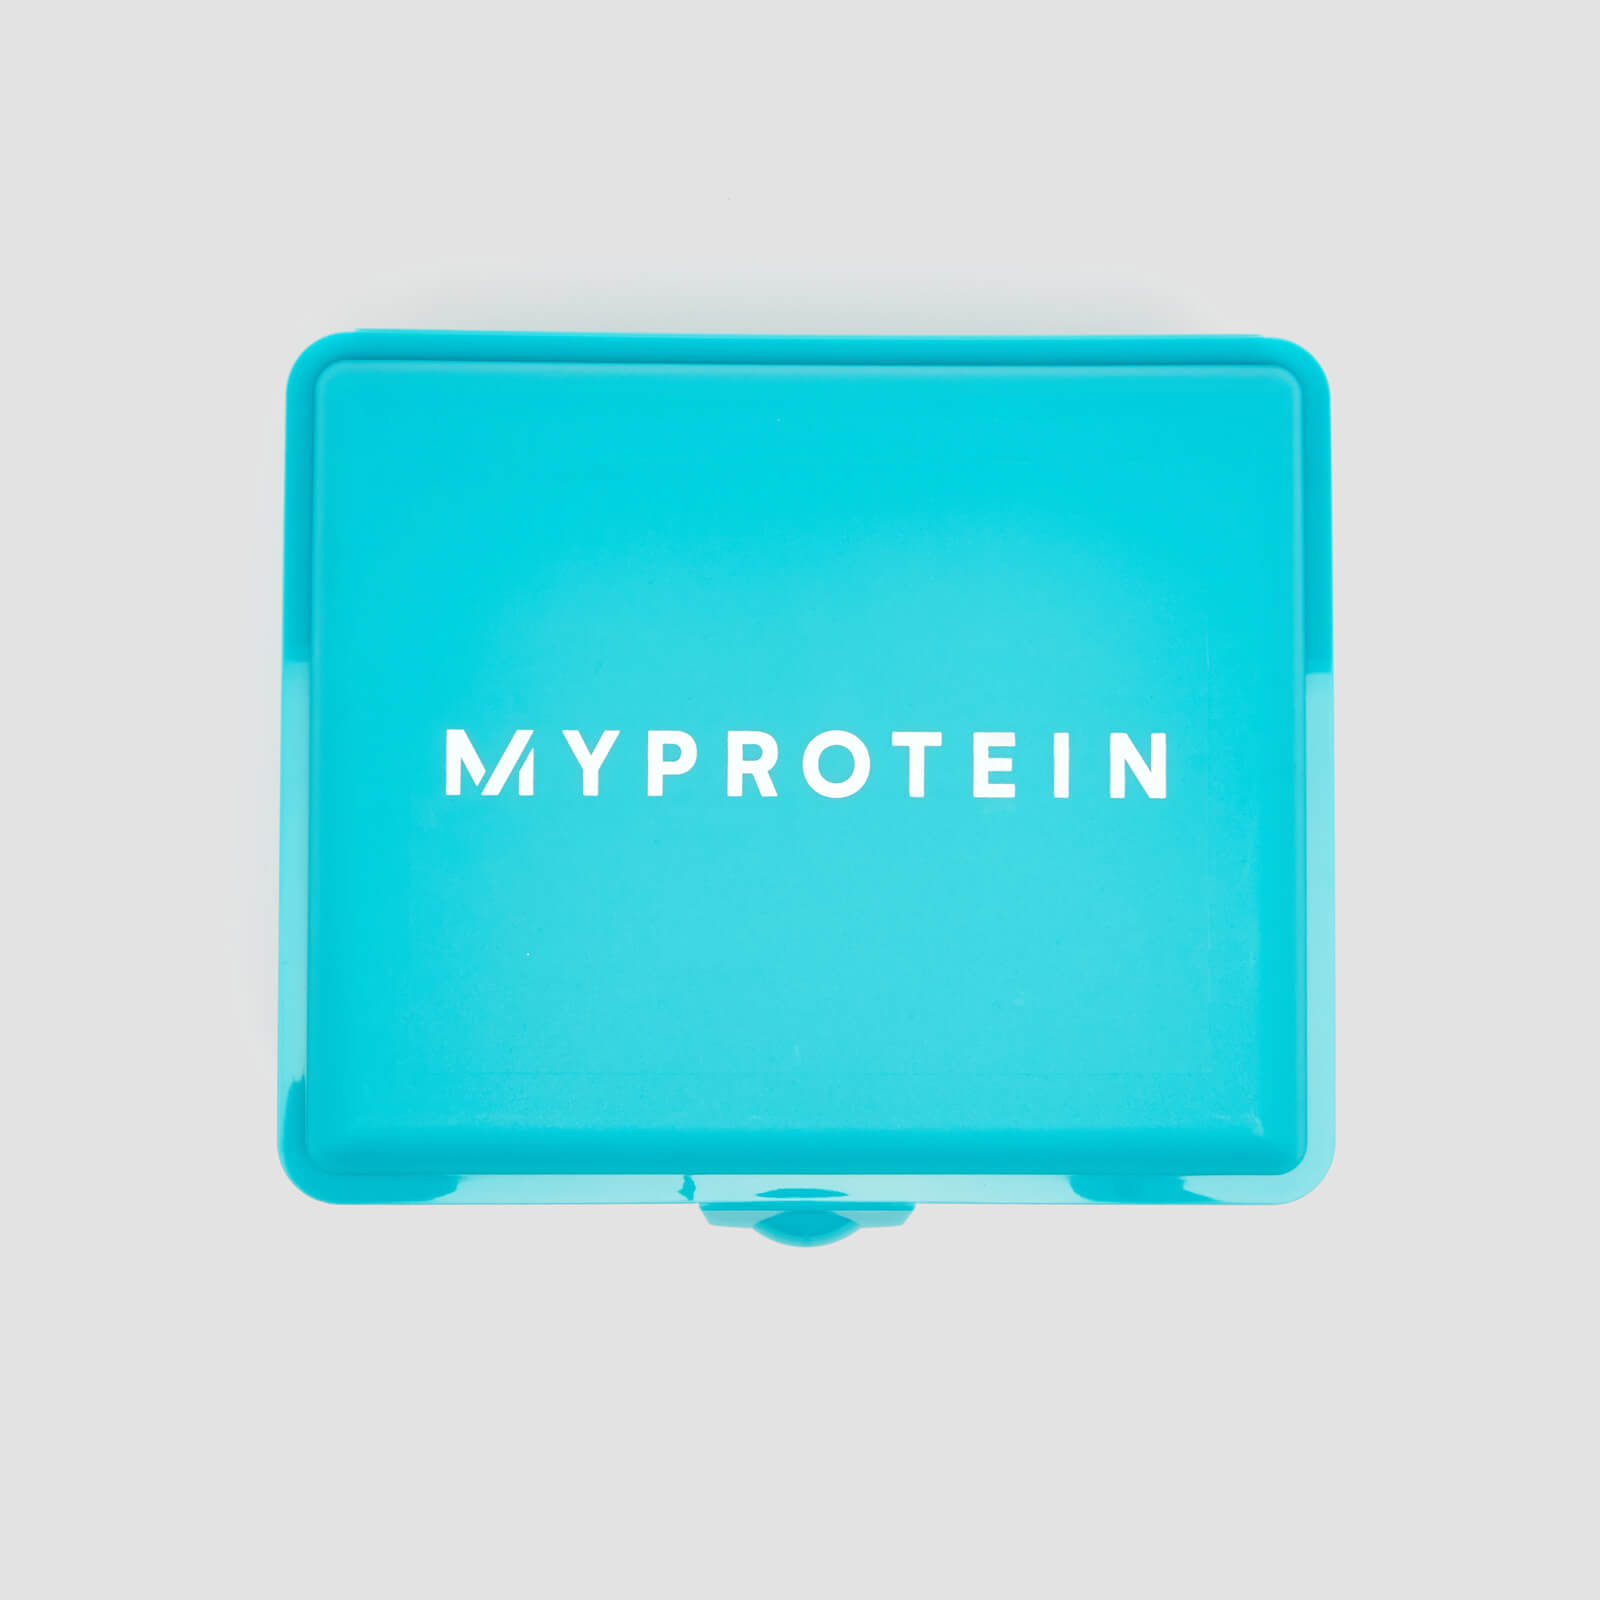 Myprotein Stor Lukkbar Boks